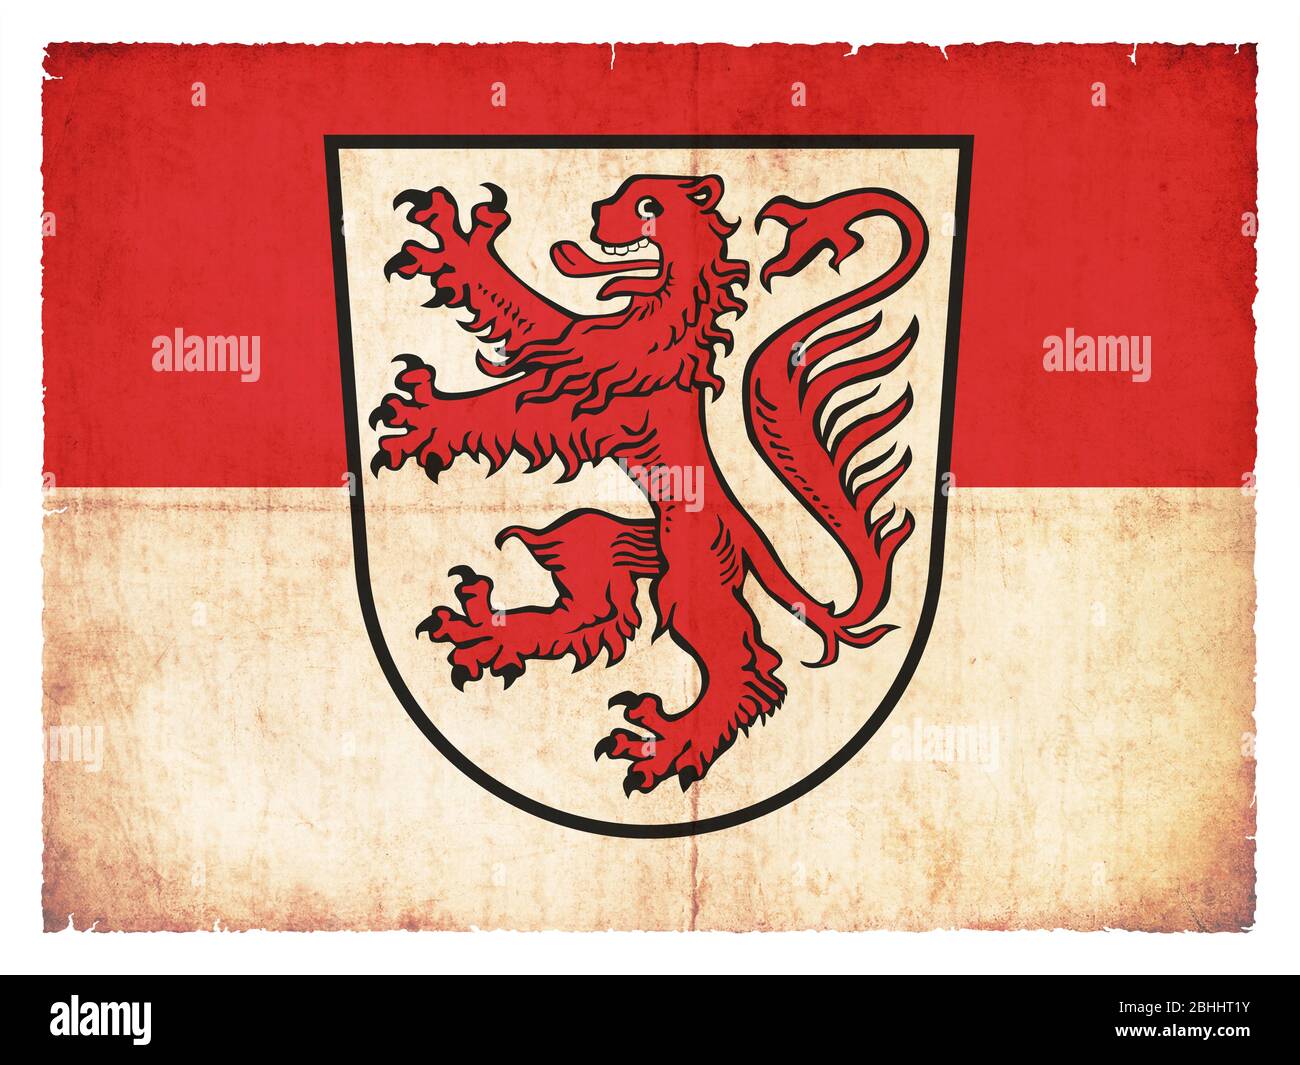 Bandera de la ciudad alemana Braunschweig (Baja Sajonia) creada en estilo grunge Foto de stock